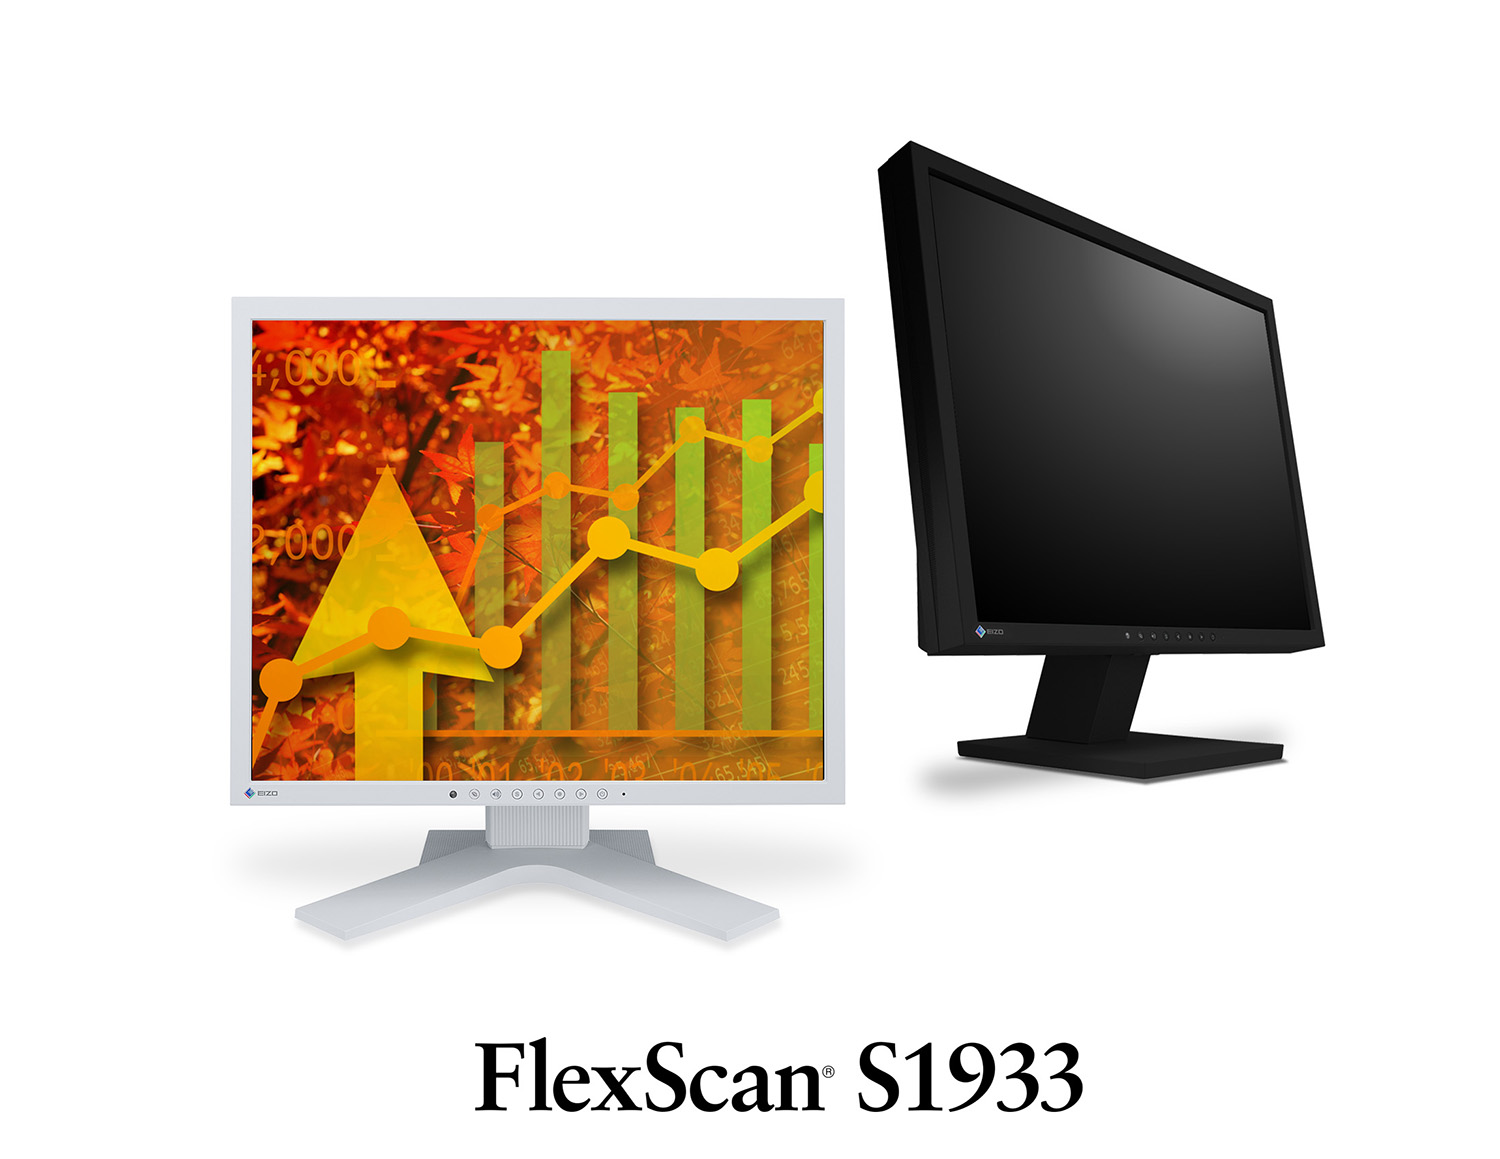 Immagine pubblicata in relazione al seguente contenuto: EIZO annuncia il monitor FlexScan S1933 per ufficio e control room | Nome immagine: news21100_EIZO-FlexScan-S1933_1.jpg